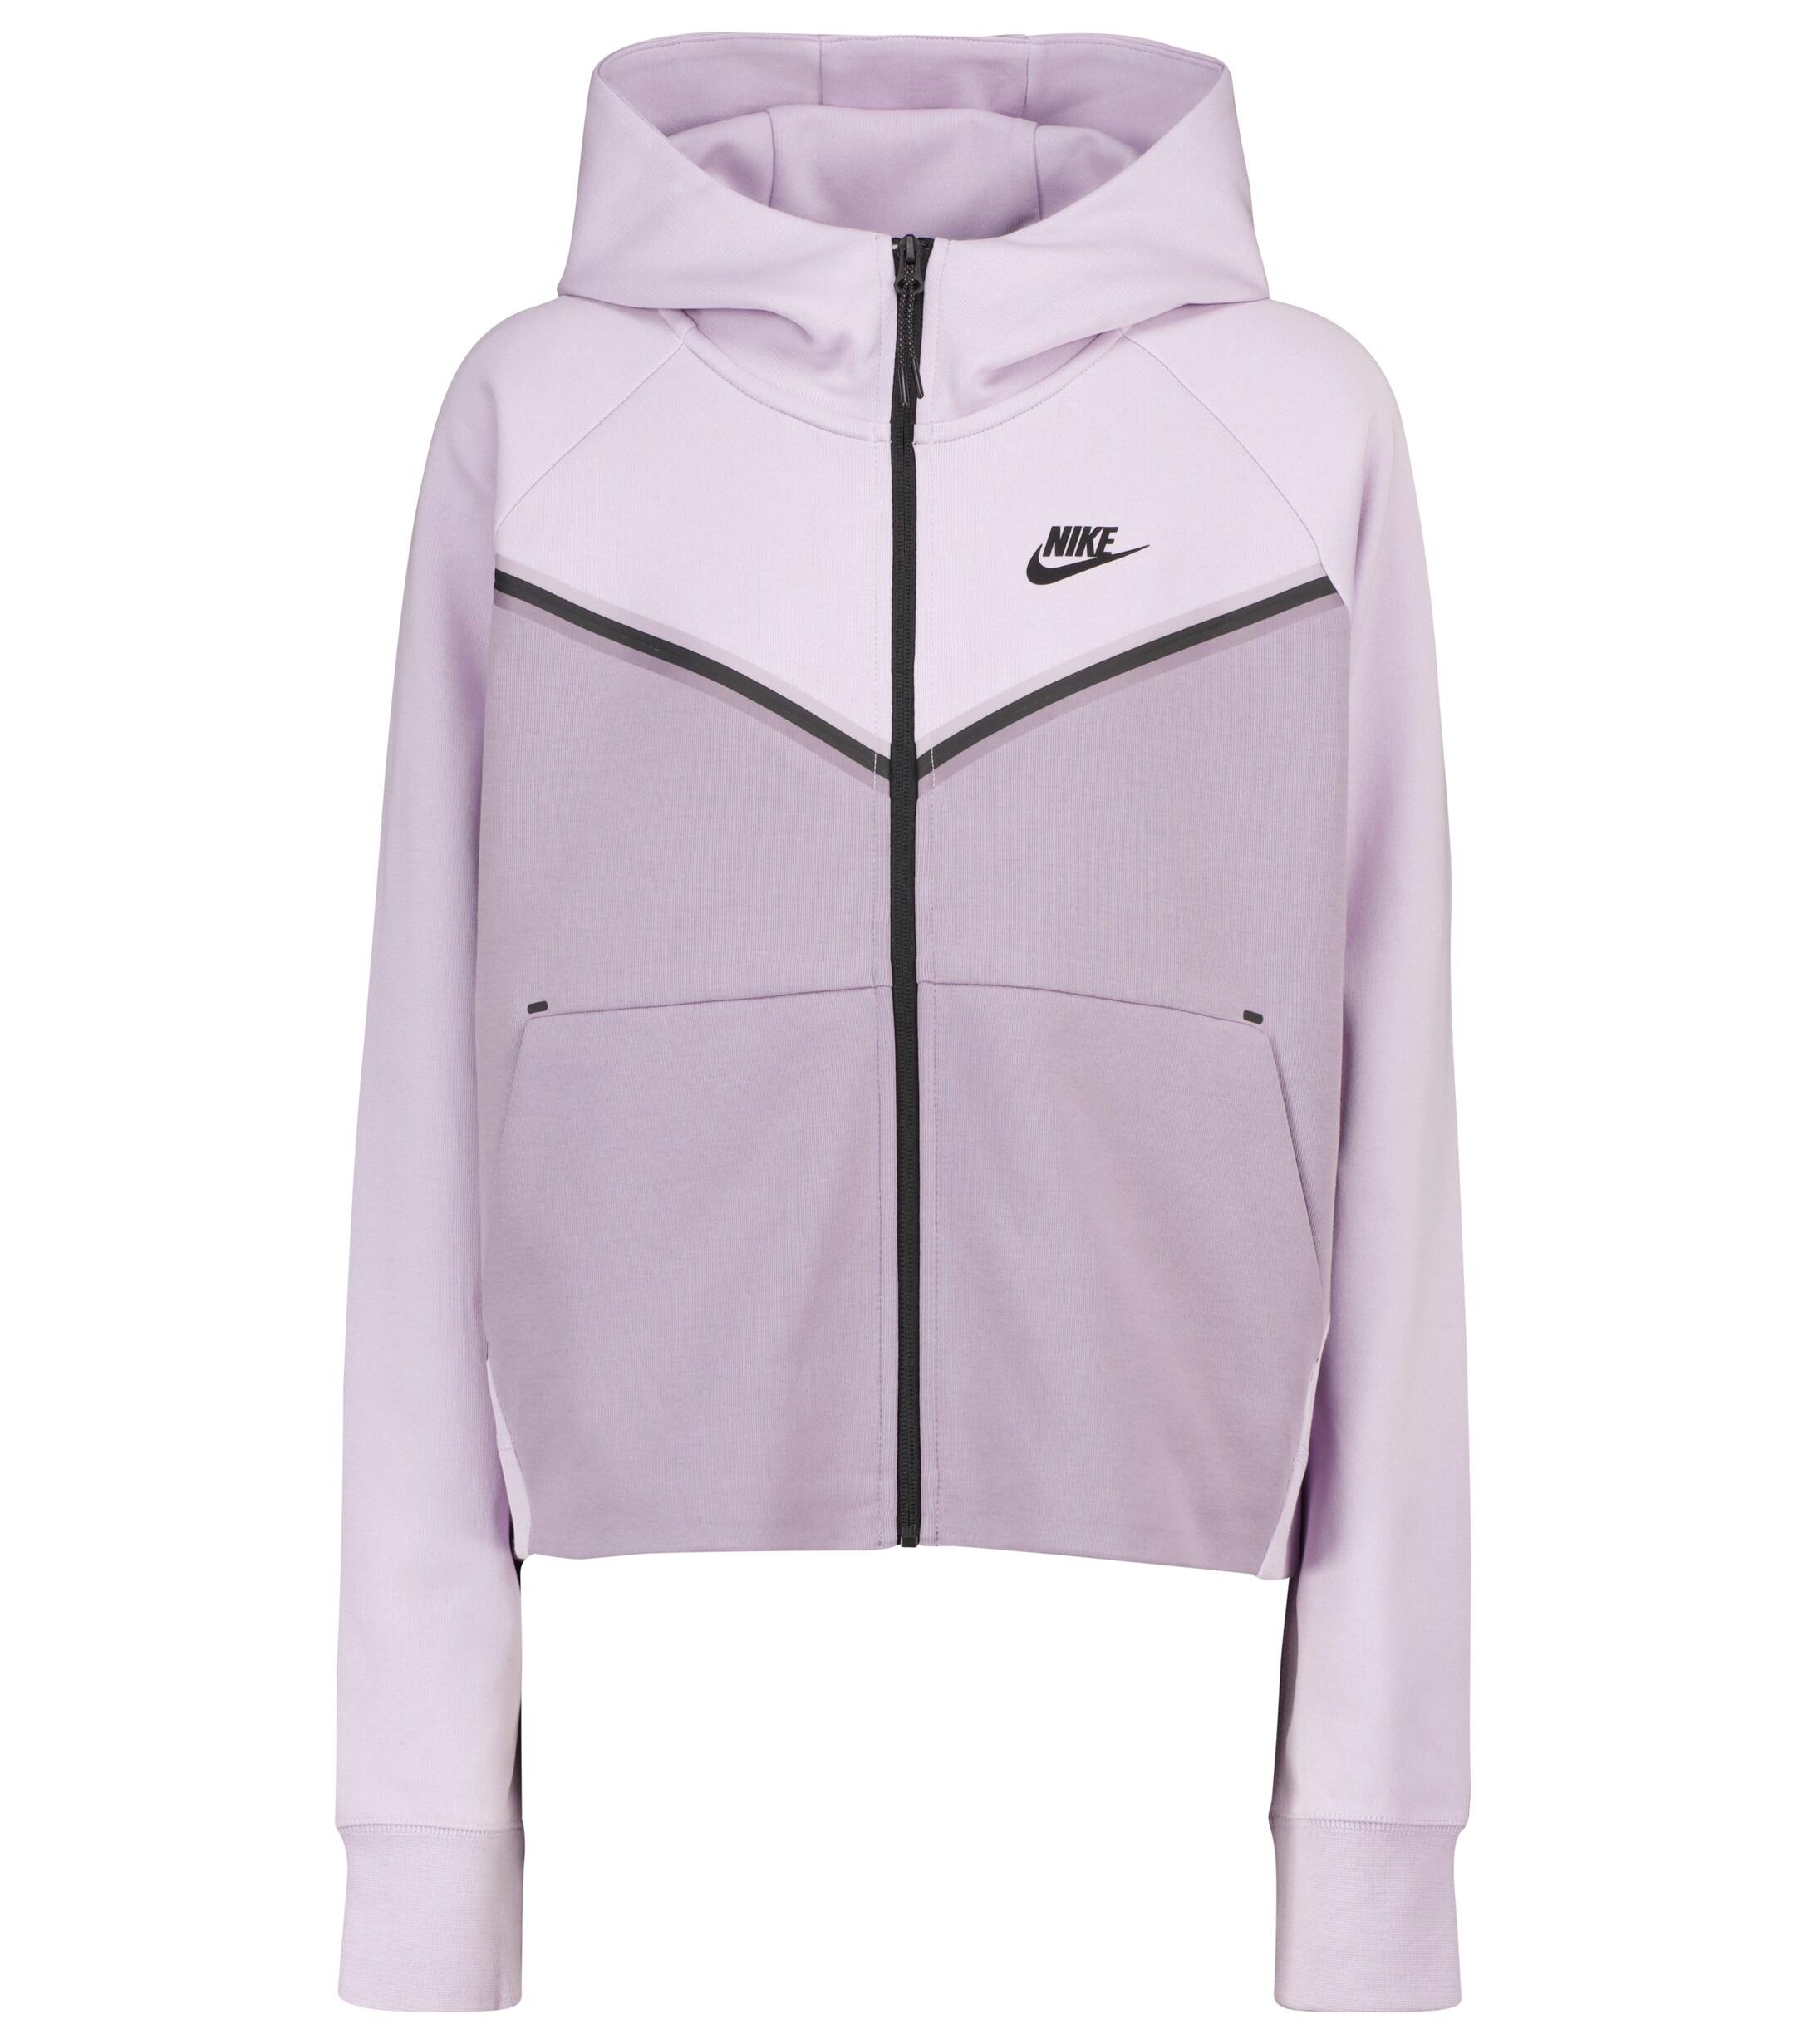 Nike Tech-fleece Windrunner Jacket in Purple | Lyst Australia